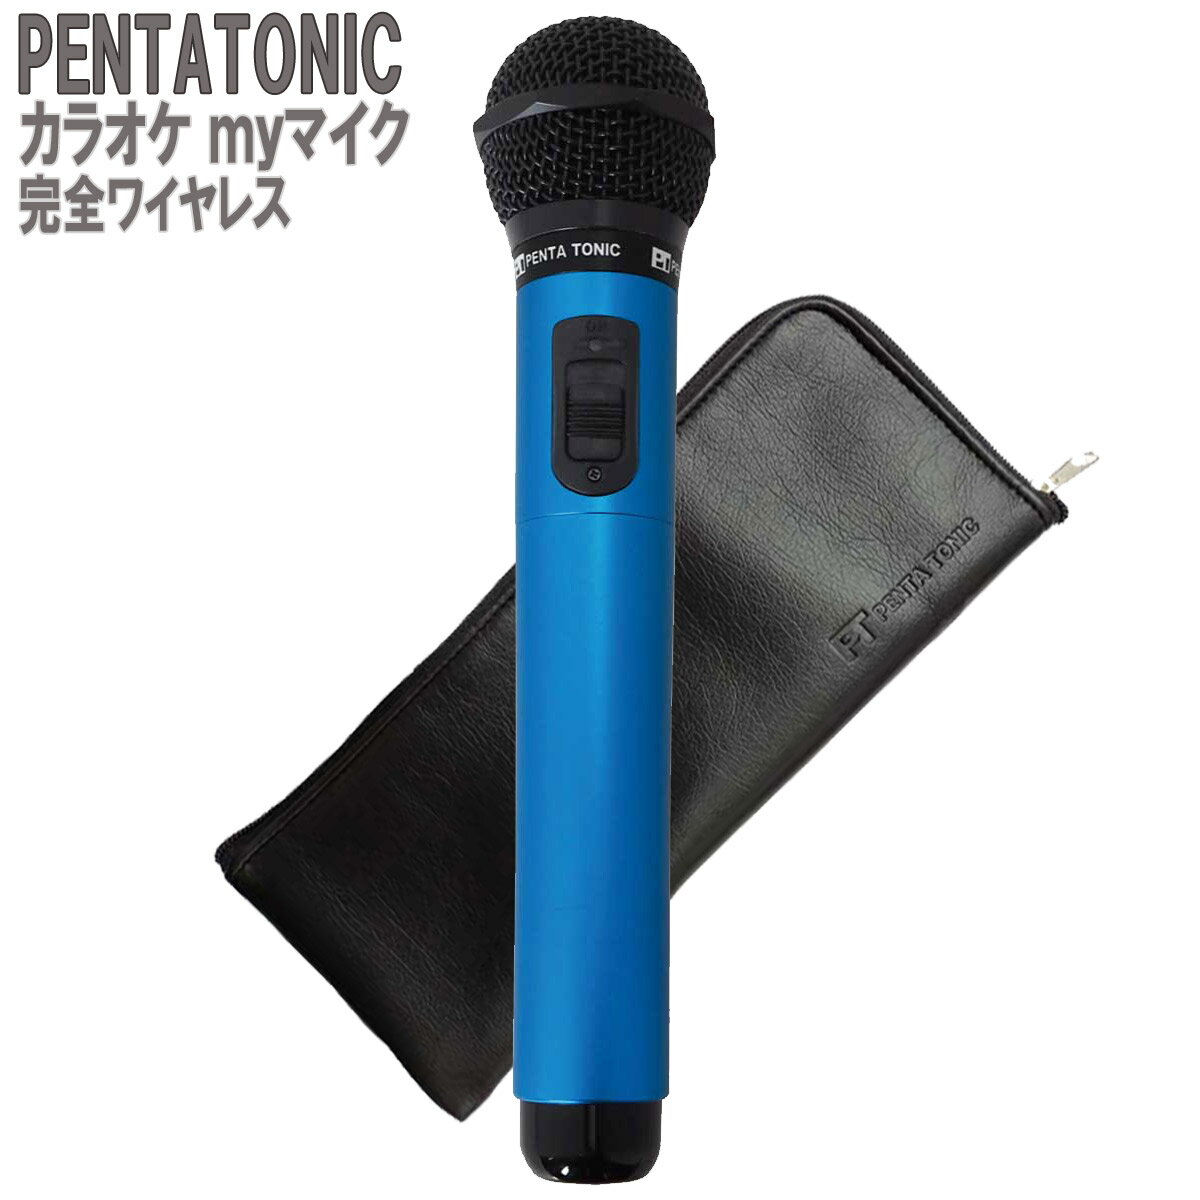 PENTATONIC カラオケマイク GTM-150 ブルー ポーチセット カラオケ用マイク 赤外線ワイヤレスマイク DAM/ JOY SOUND ペンタトニック GMT150